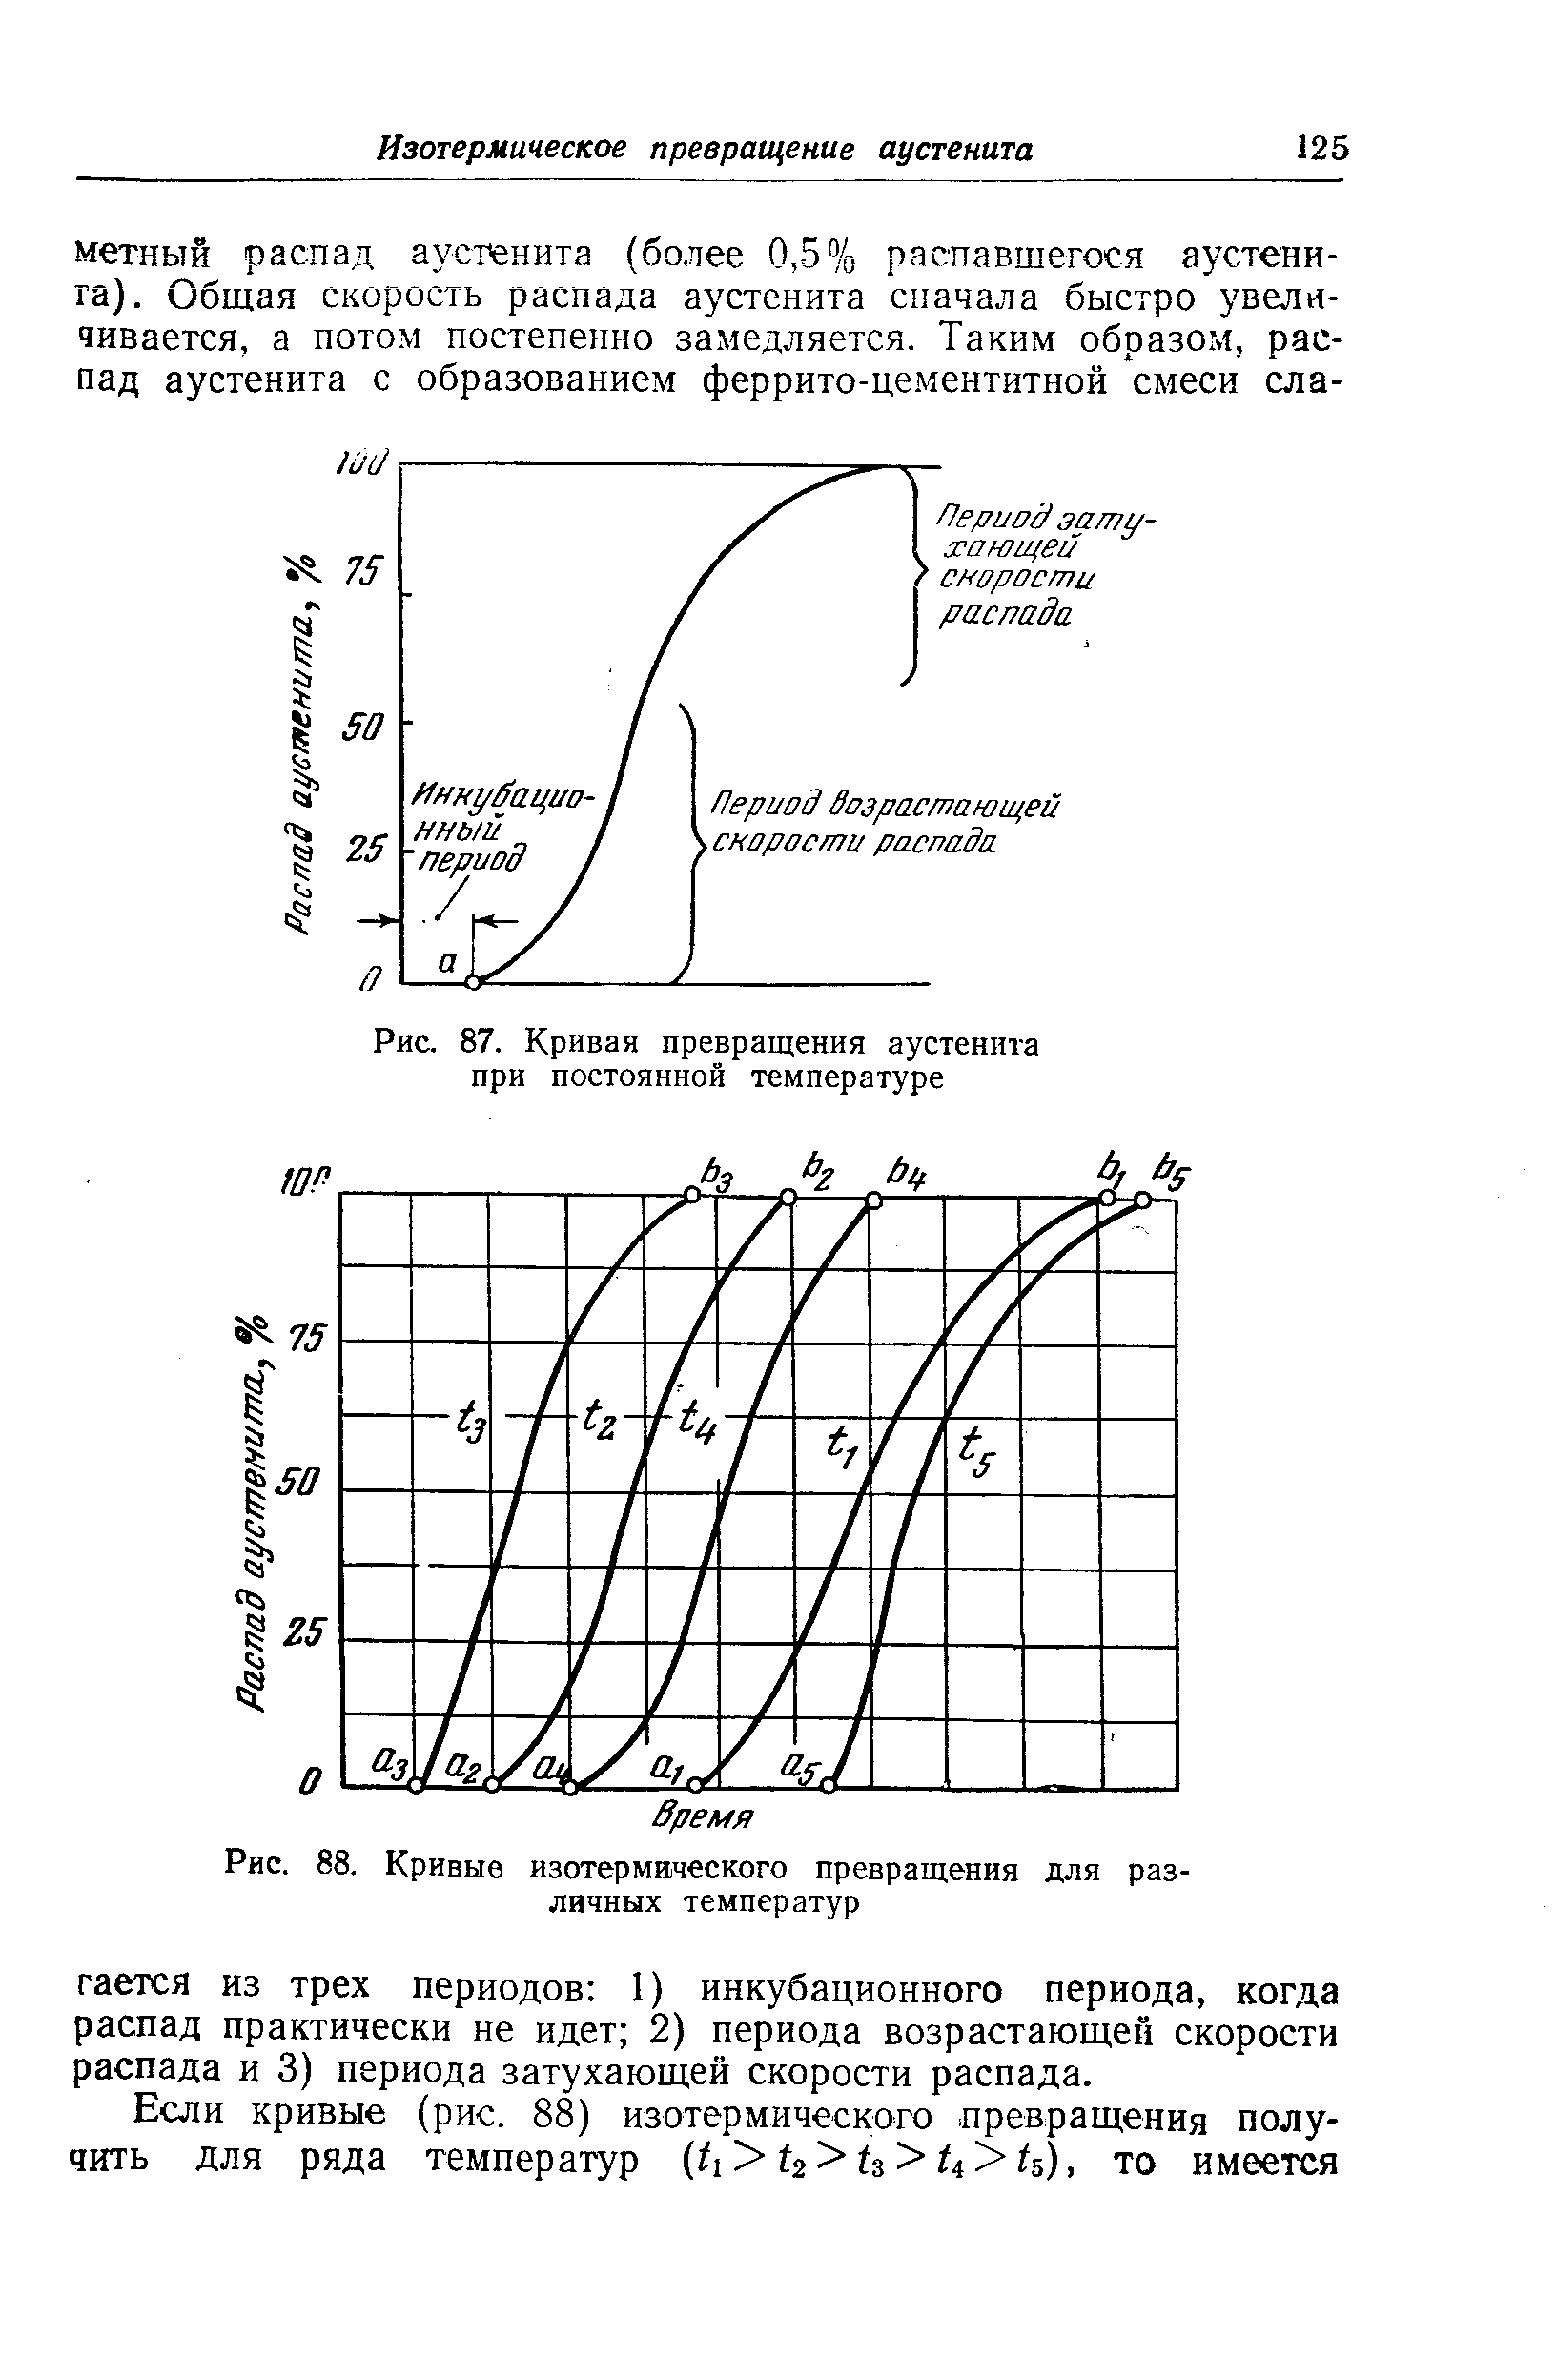 Рис. 88. Кривые изотермического превращения для различных температур
